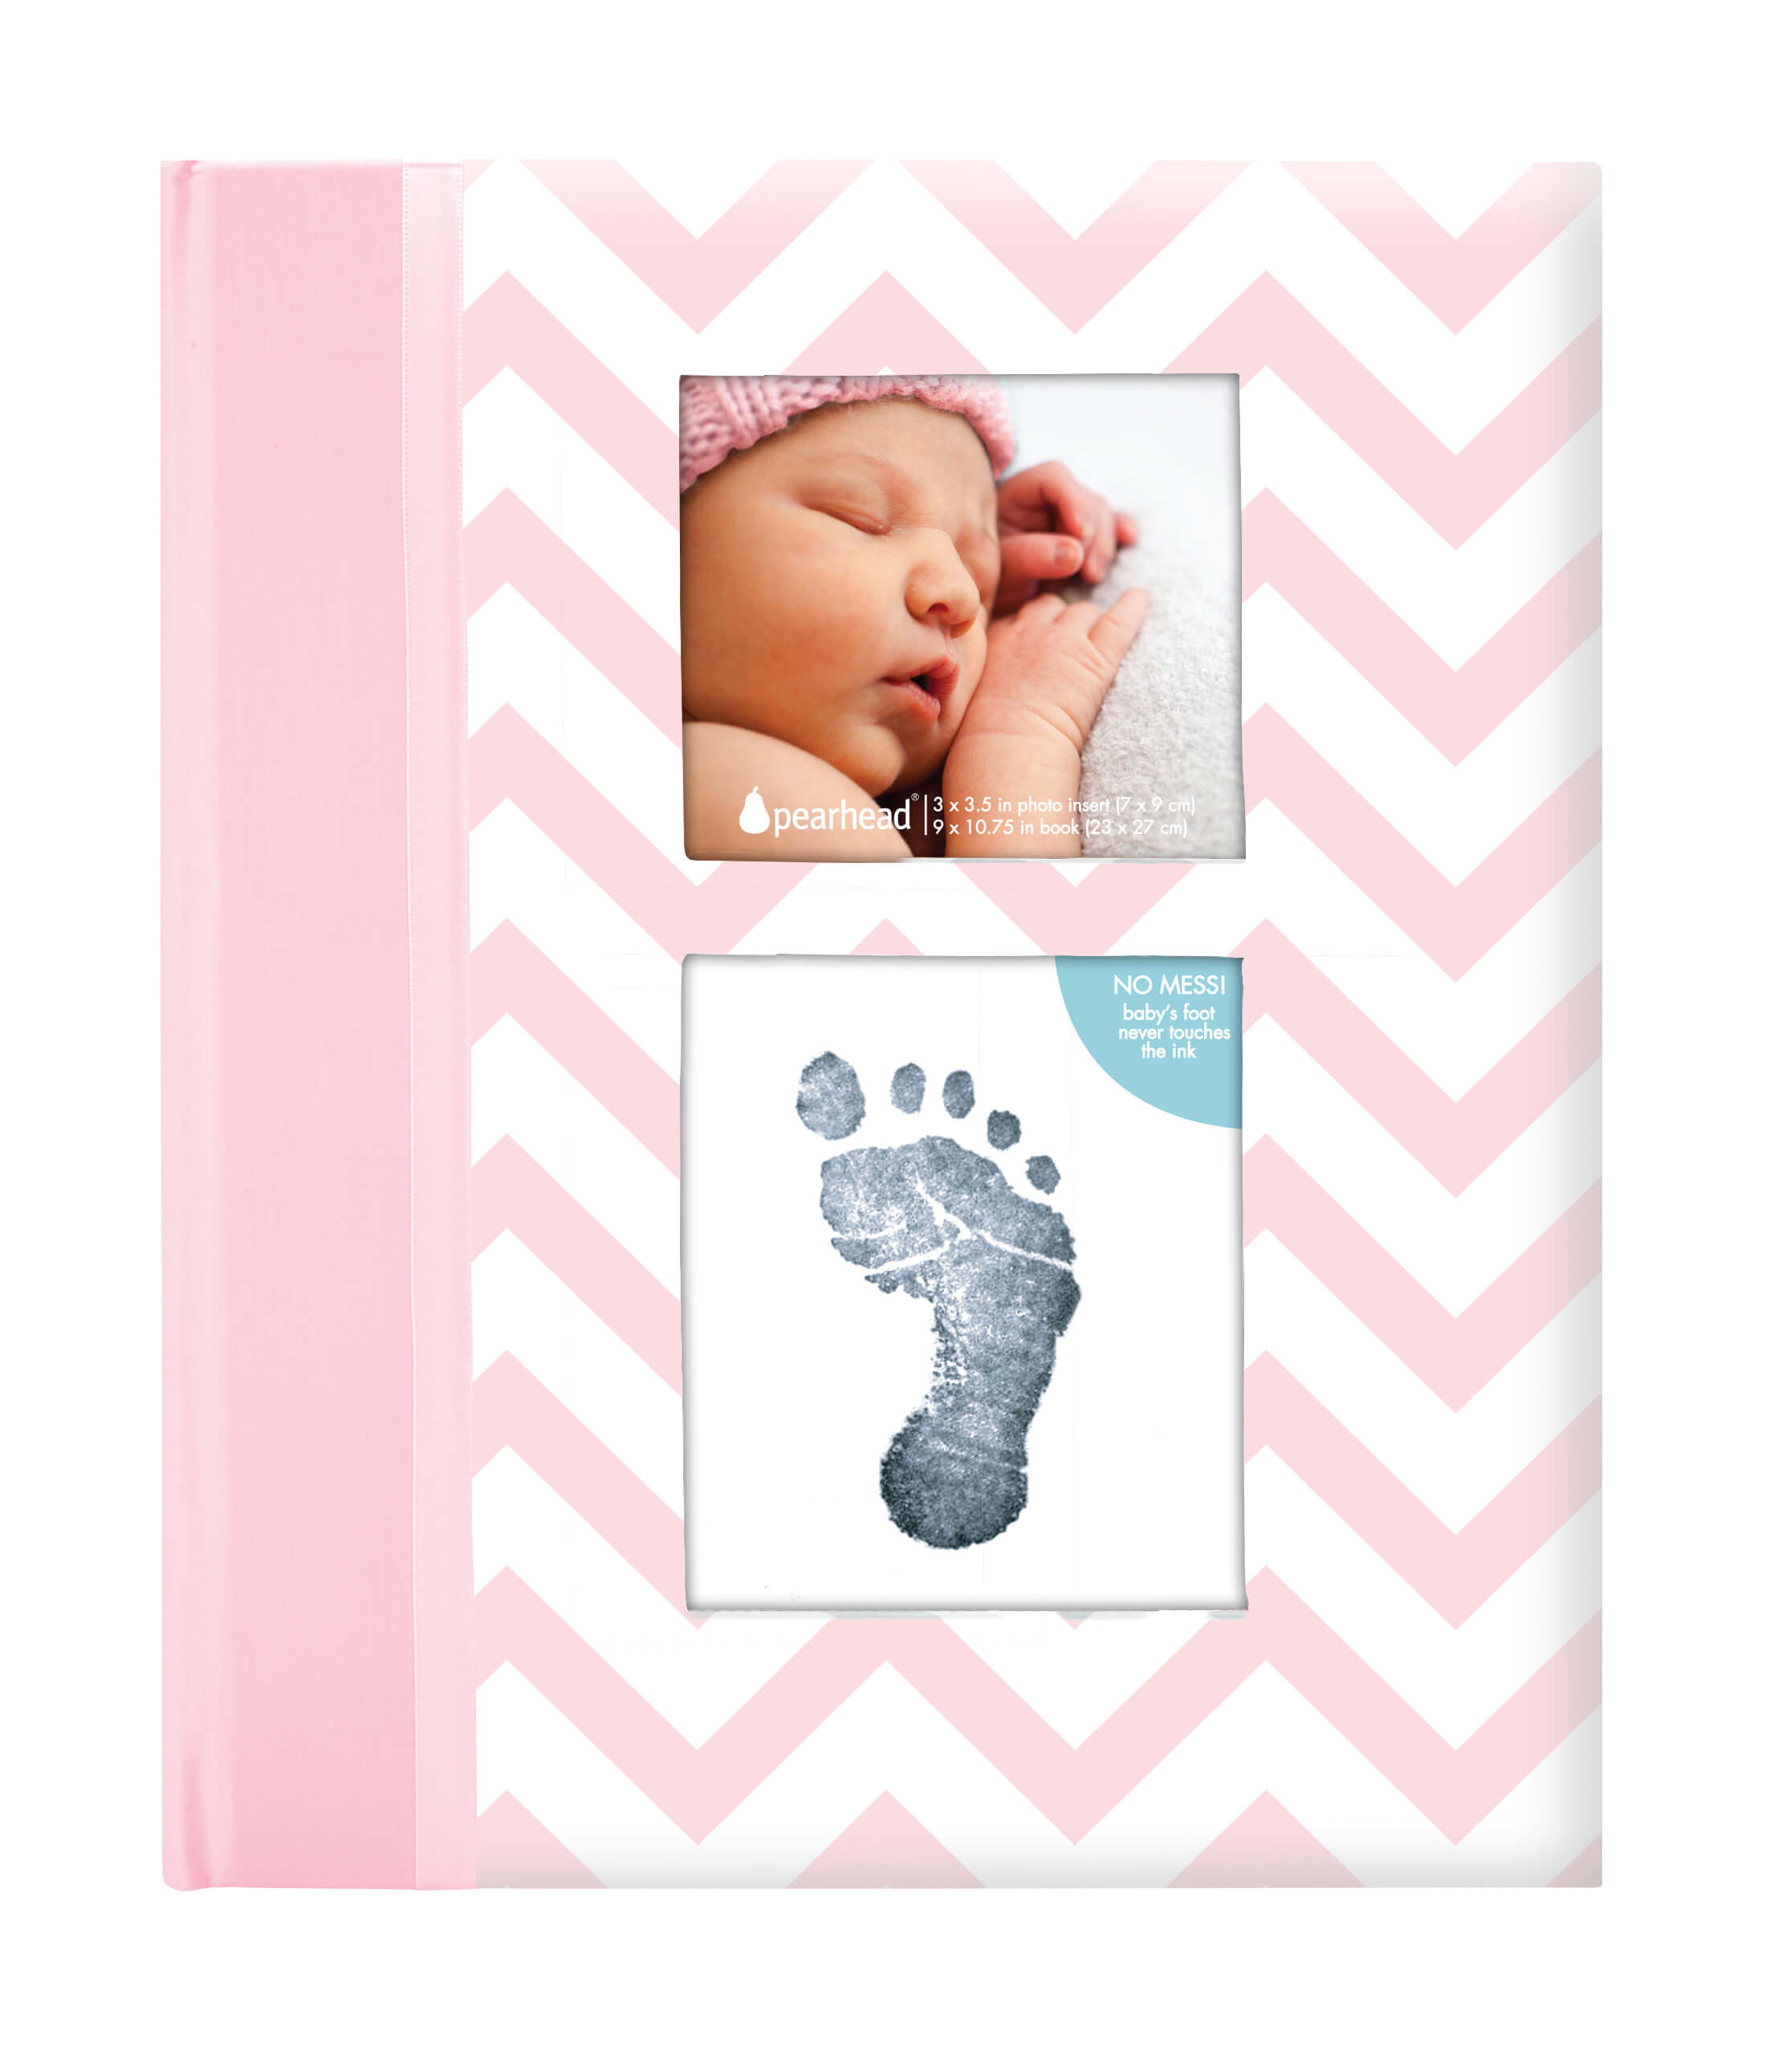 Pearhead - Caietul bebelusului cu amprenta cerneala pink